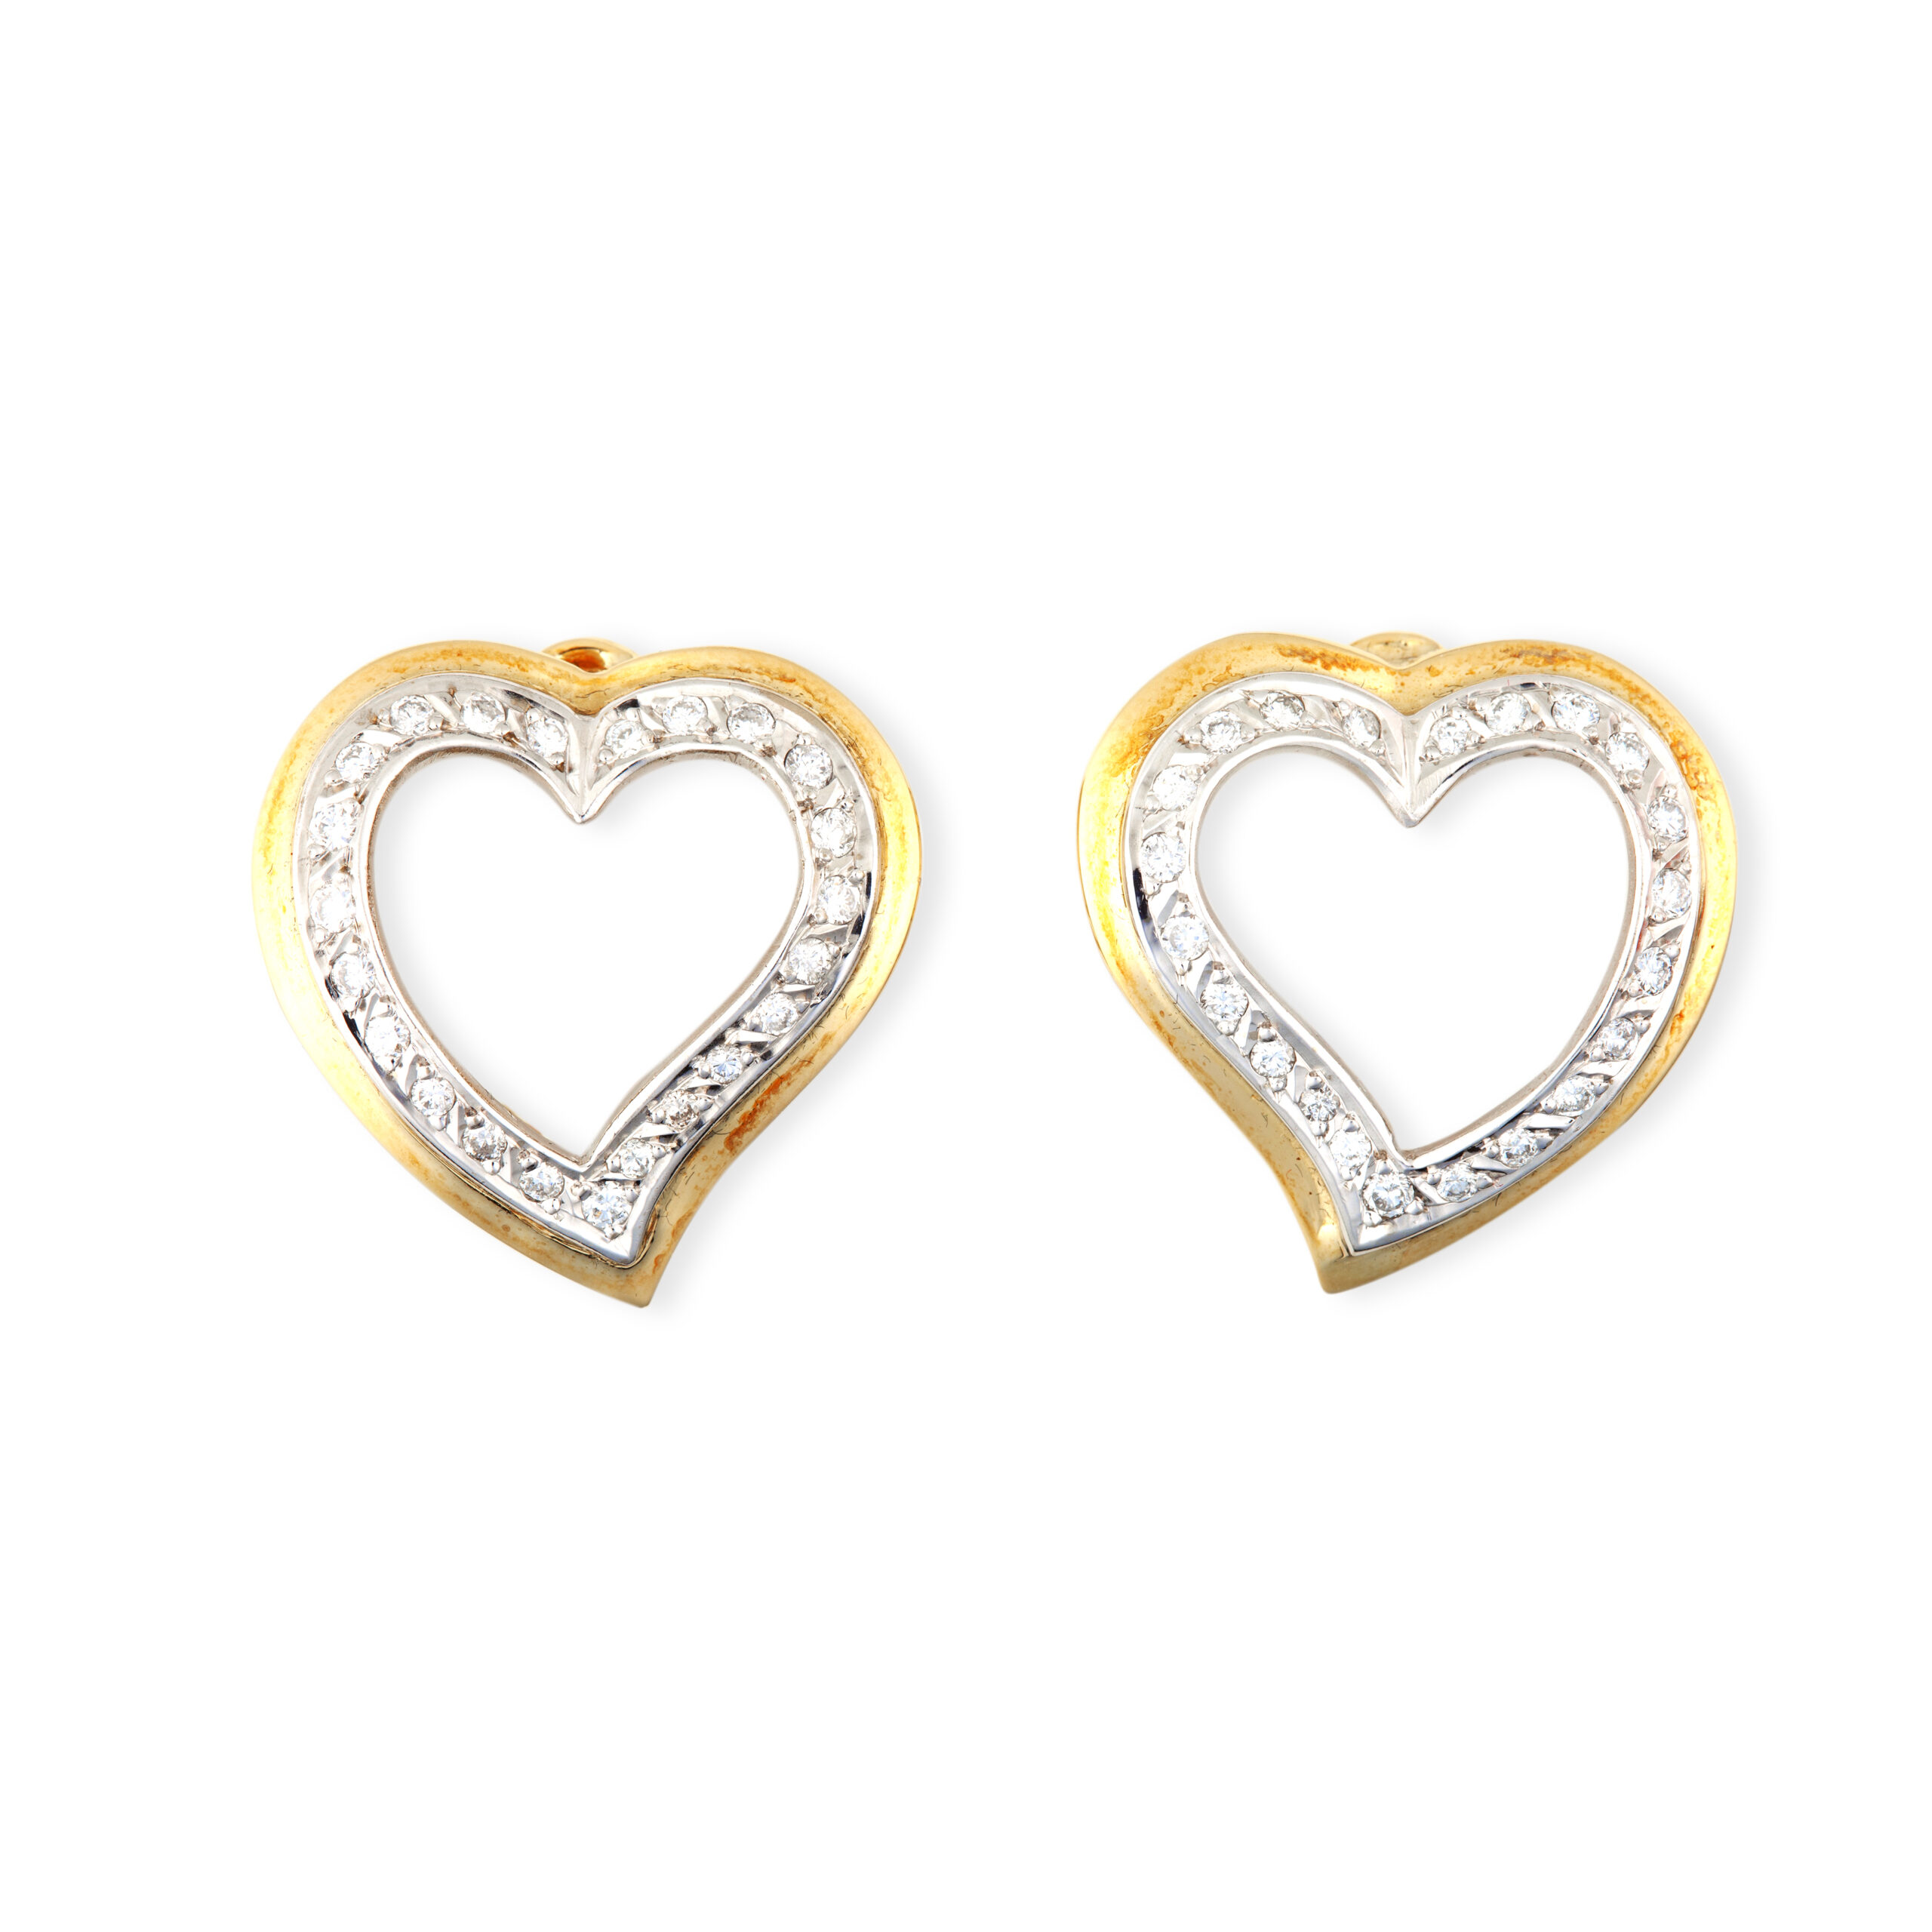 Σκουλαρίκια σε συνδυασμό κίτρινου και λευκού χρυσού Κ18 σε σχήμα καρδιάς με στρογγυλά διαμάντια μπριγιάν